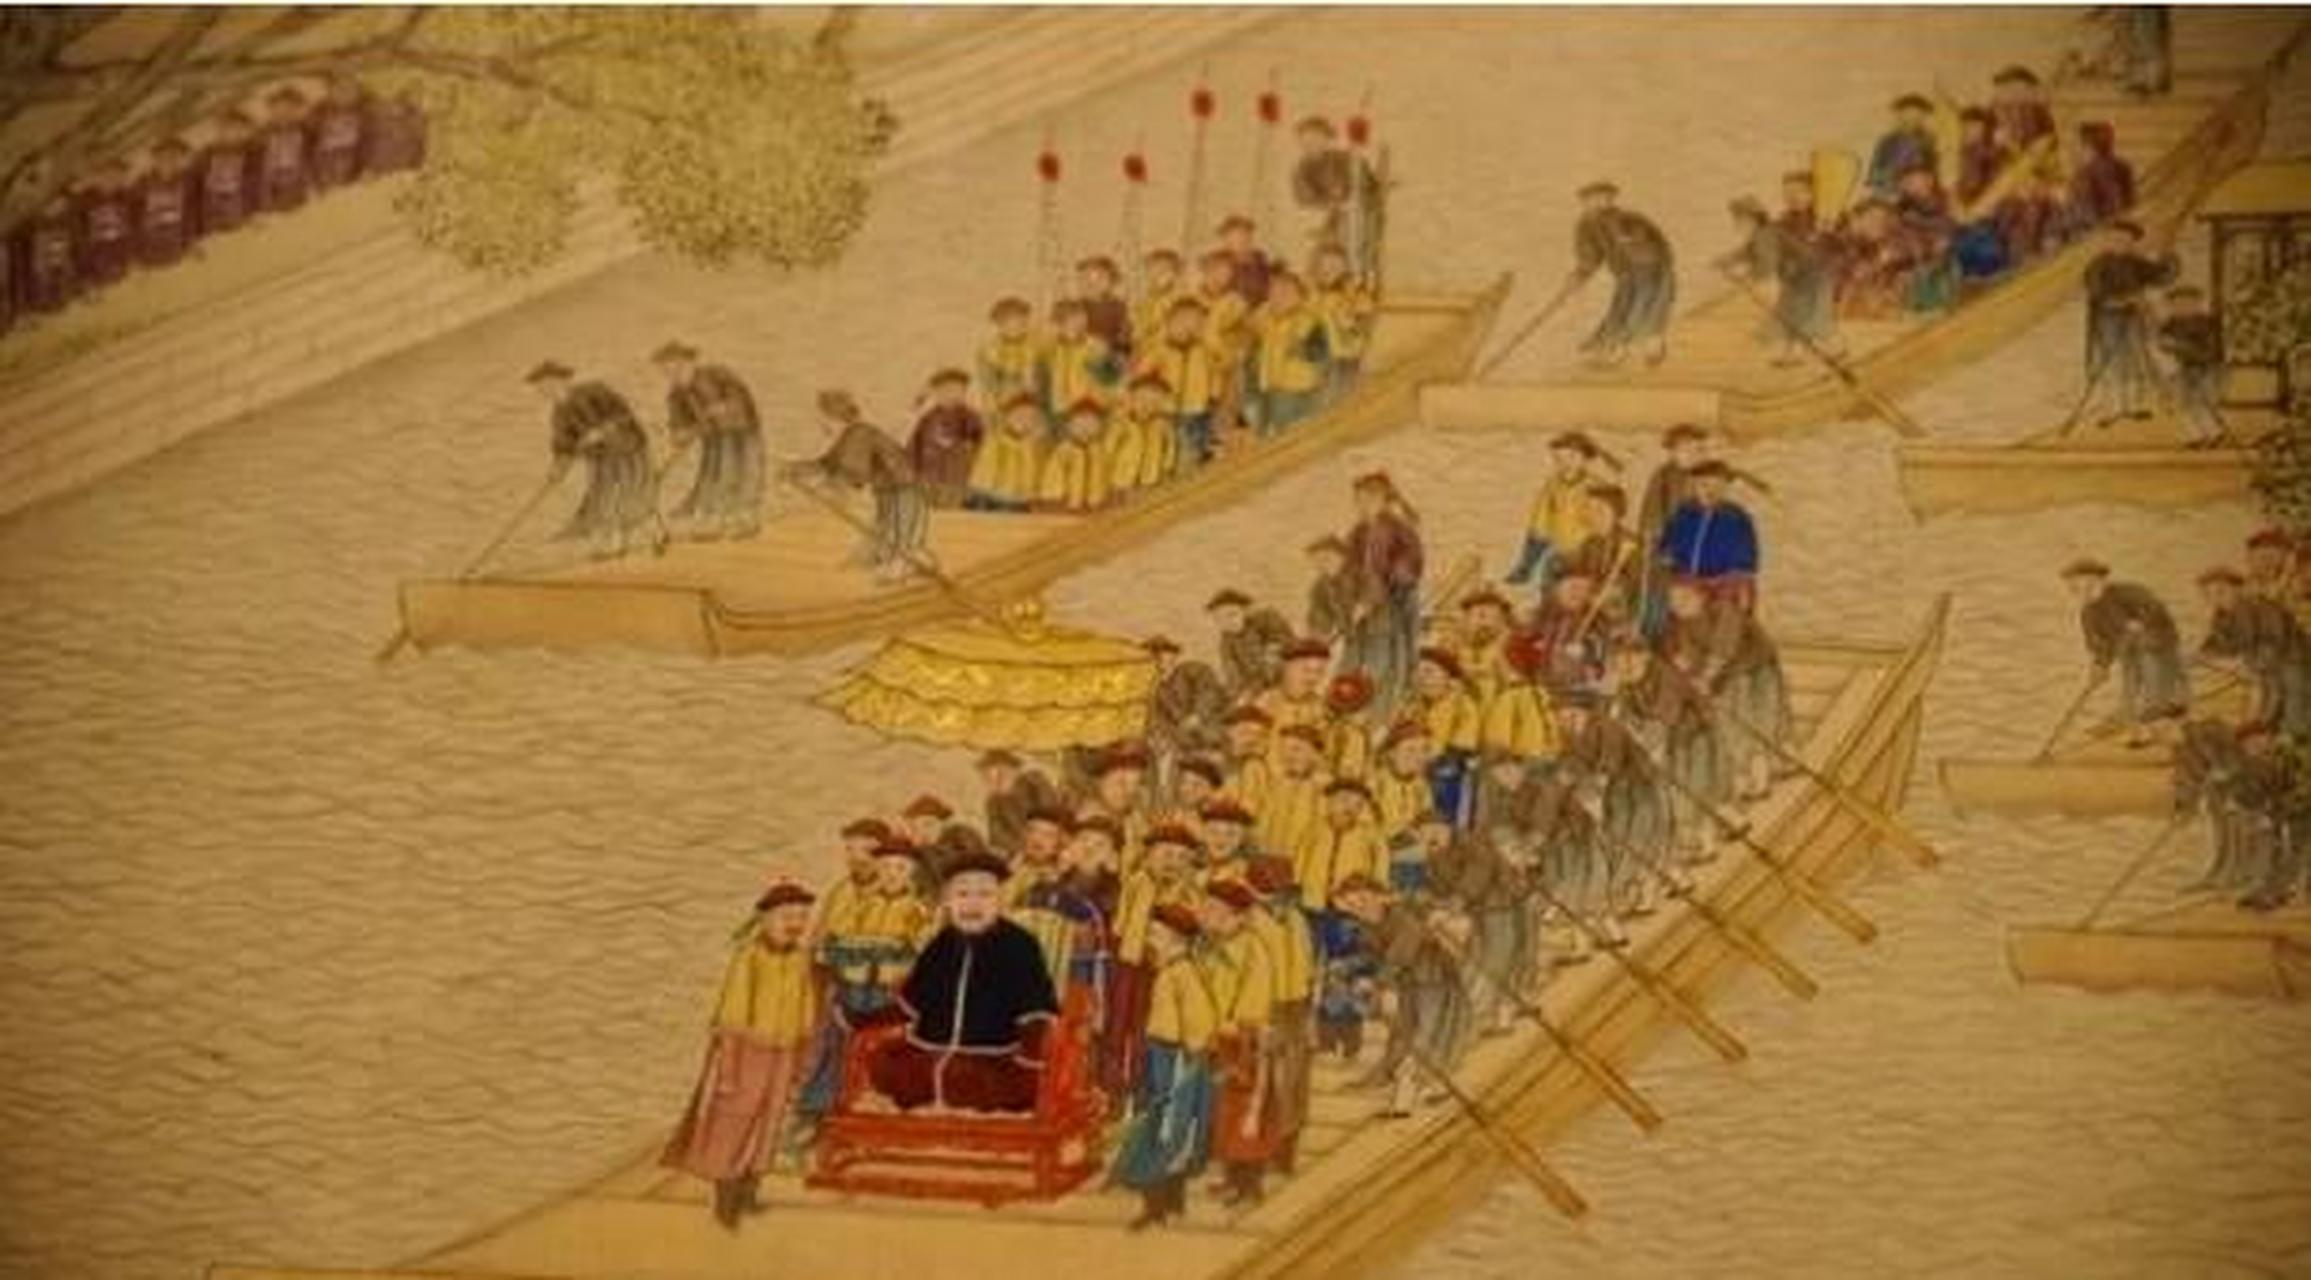 清高宗乾隆南巡至扬州时,当地盐商商会头领江春自告奋勇地承担了接驾